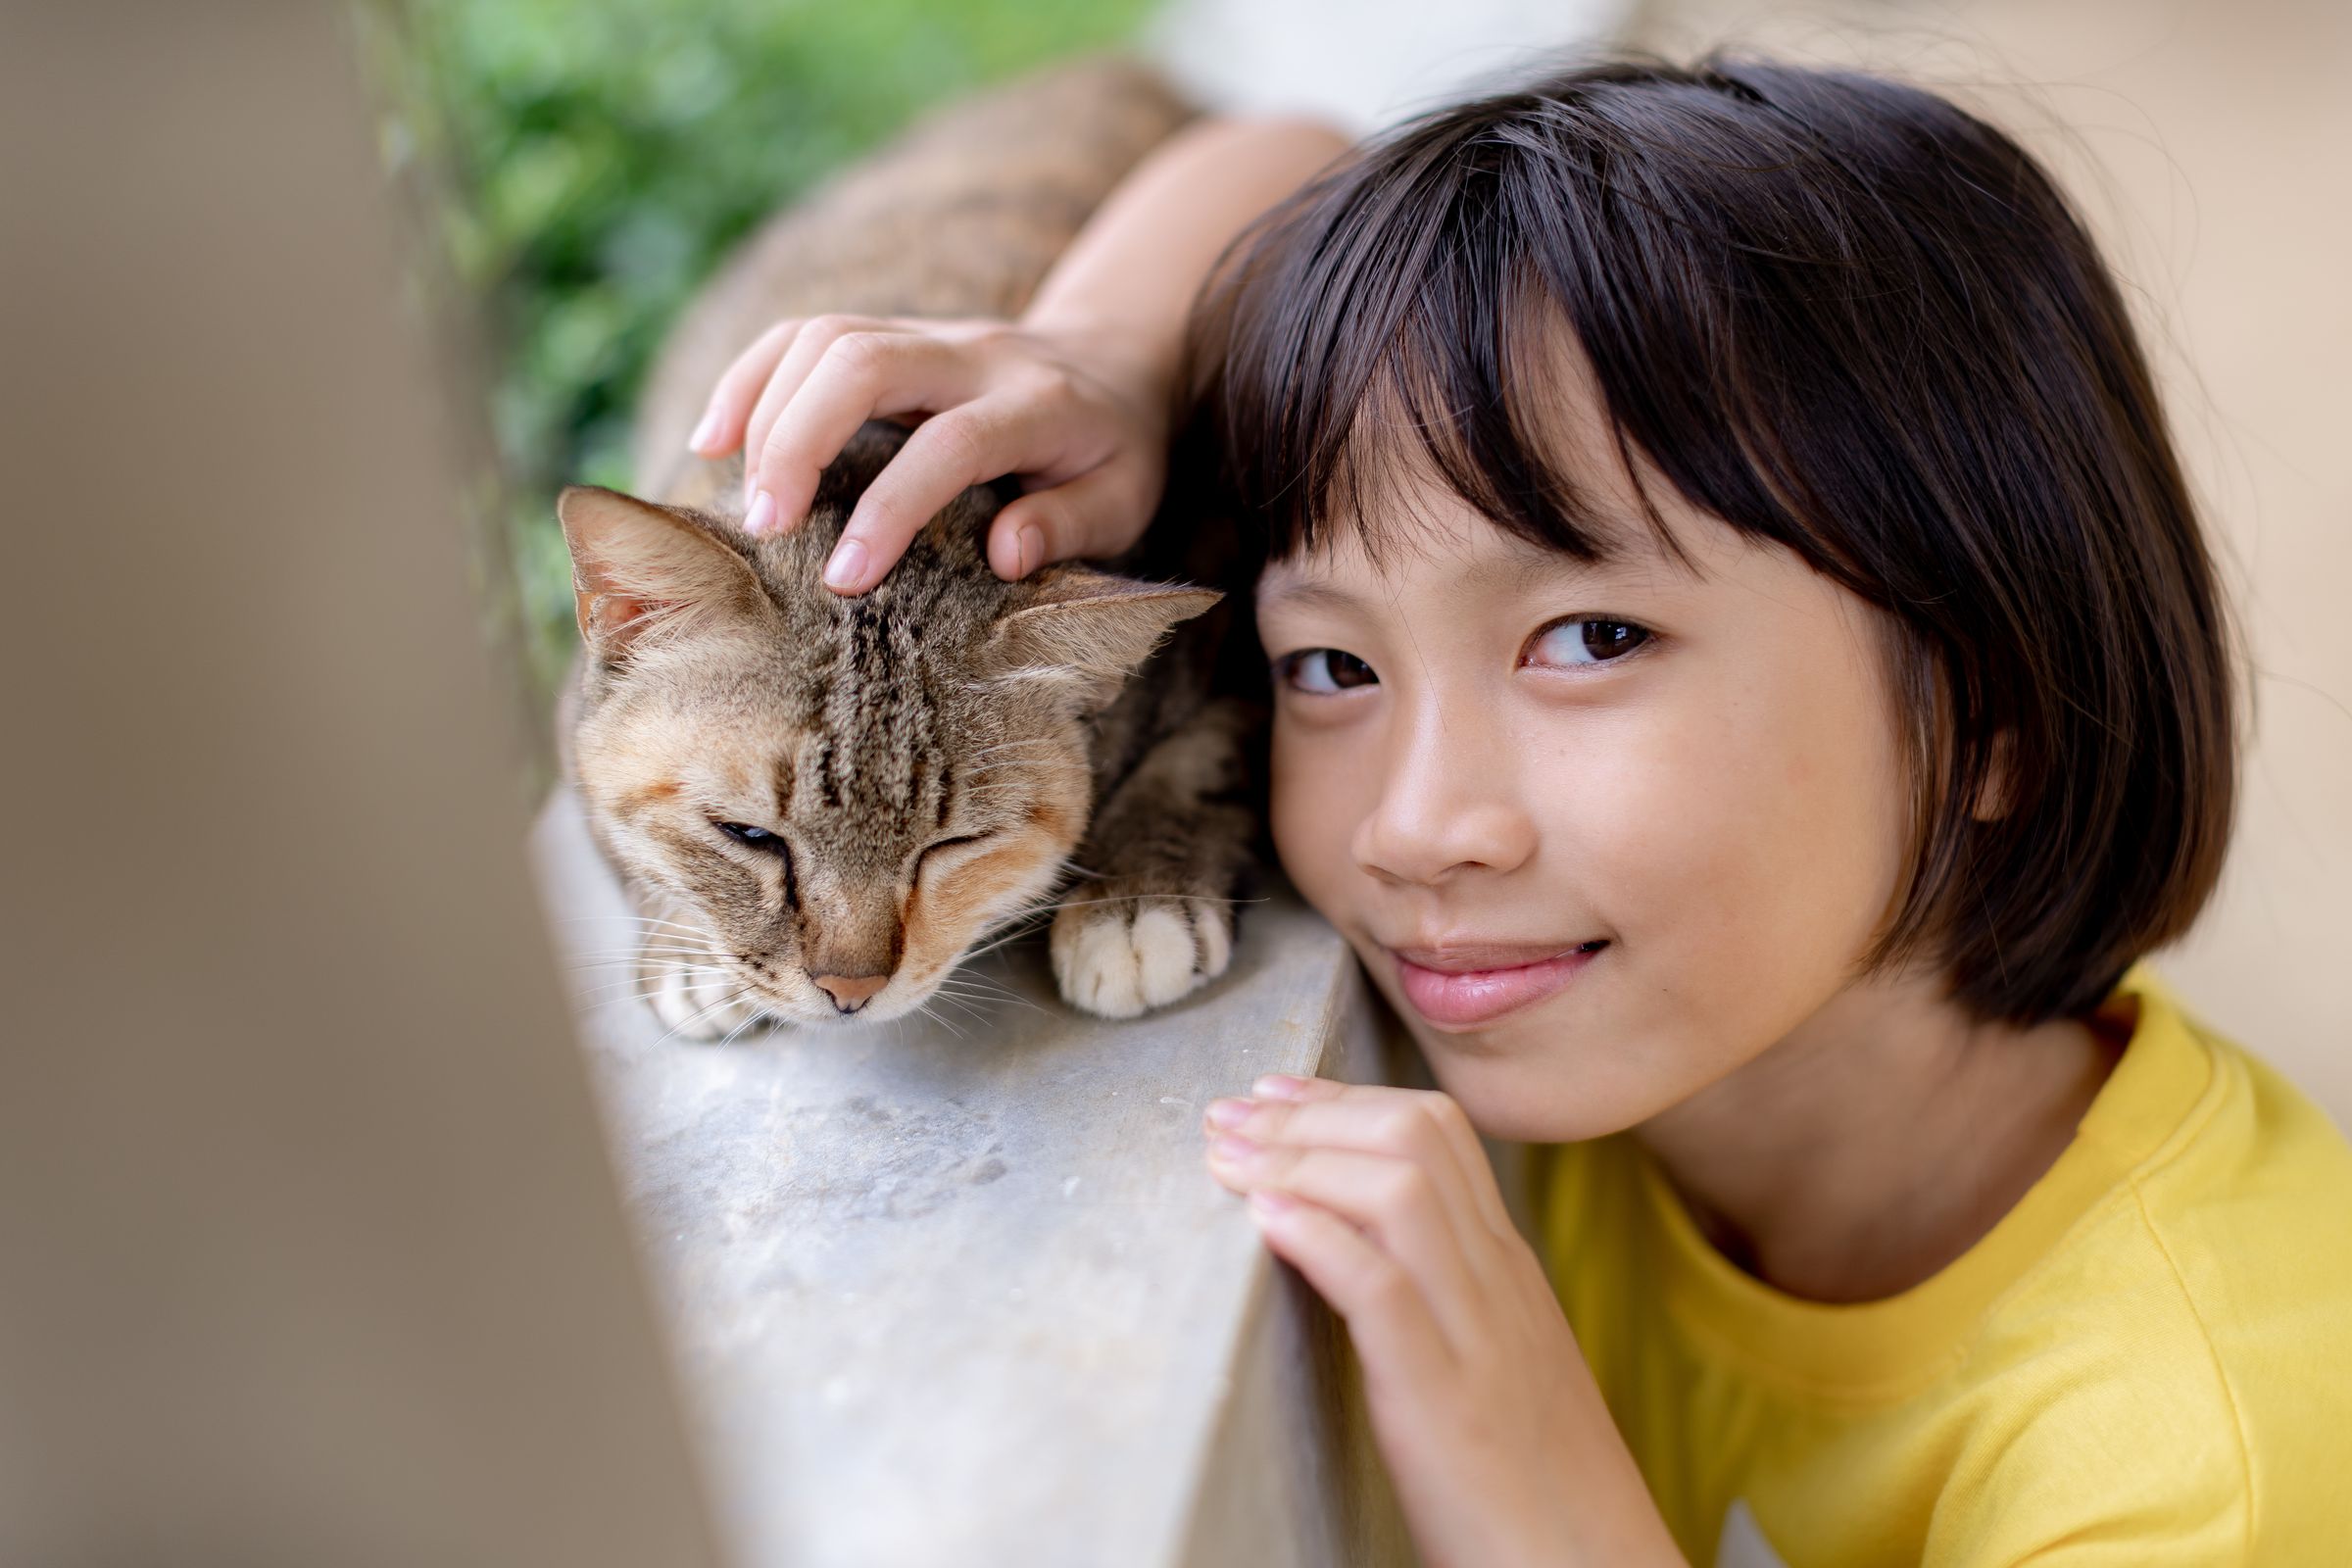 Ein Mädchen in gelbem T-Shirt streichelt eine braune Katze. (Quelle: Jakob Studnar)